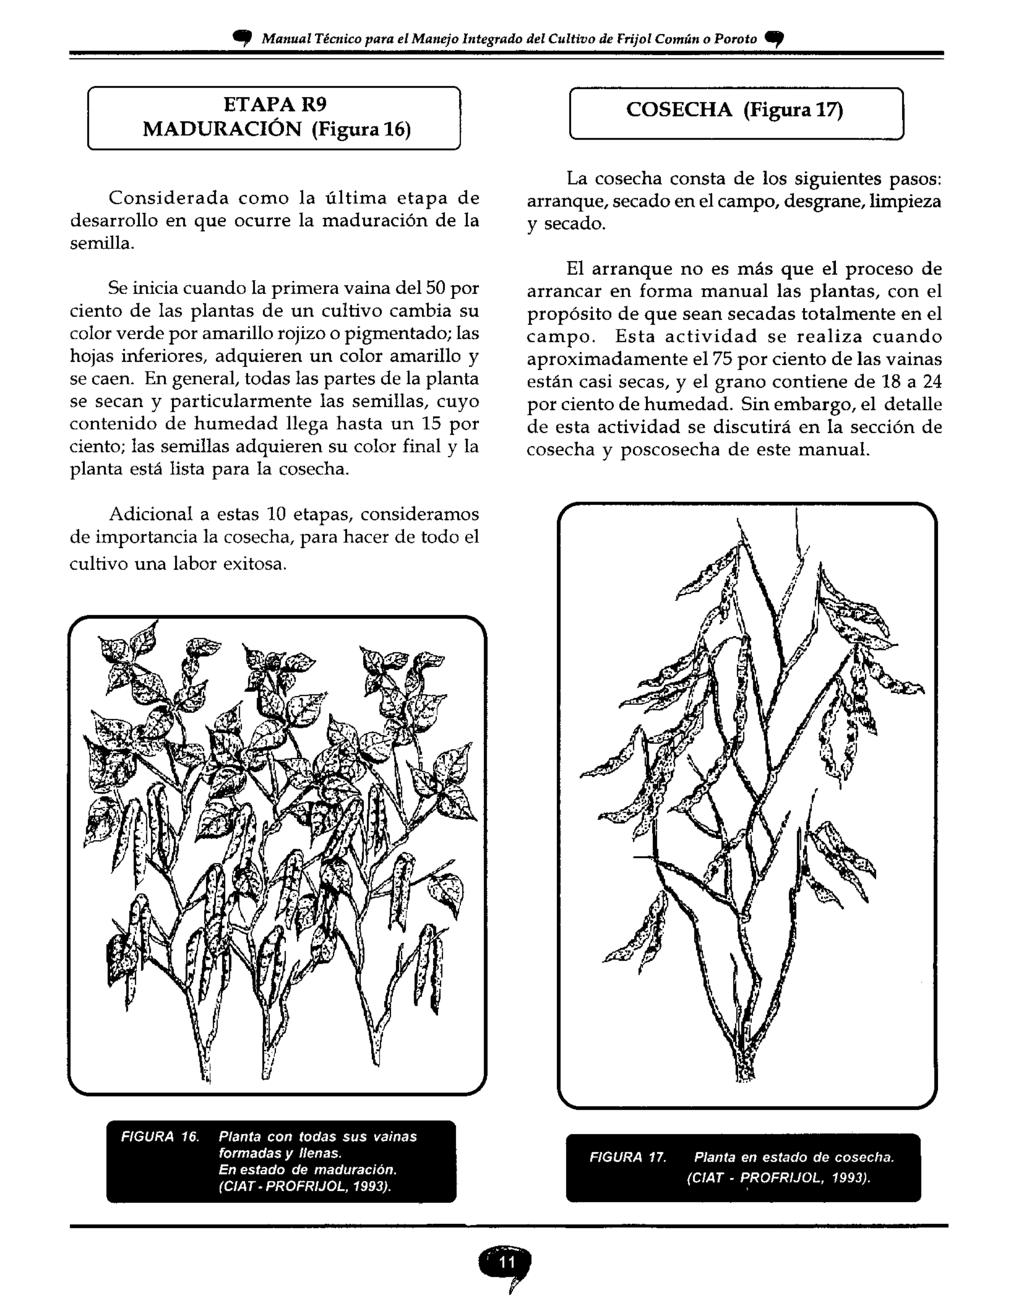 49 Manual Técnico para el Manejo Integrado del Cultivo de Frijol Común o Poroto 4P ETAPA R9 MADURACIÓN (Figura 16) Considerada como la última etapa de desarrollo en que ocurre la maduración de la